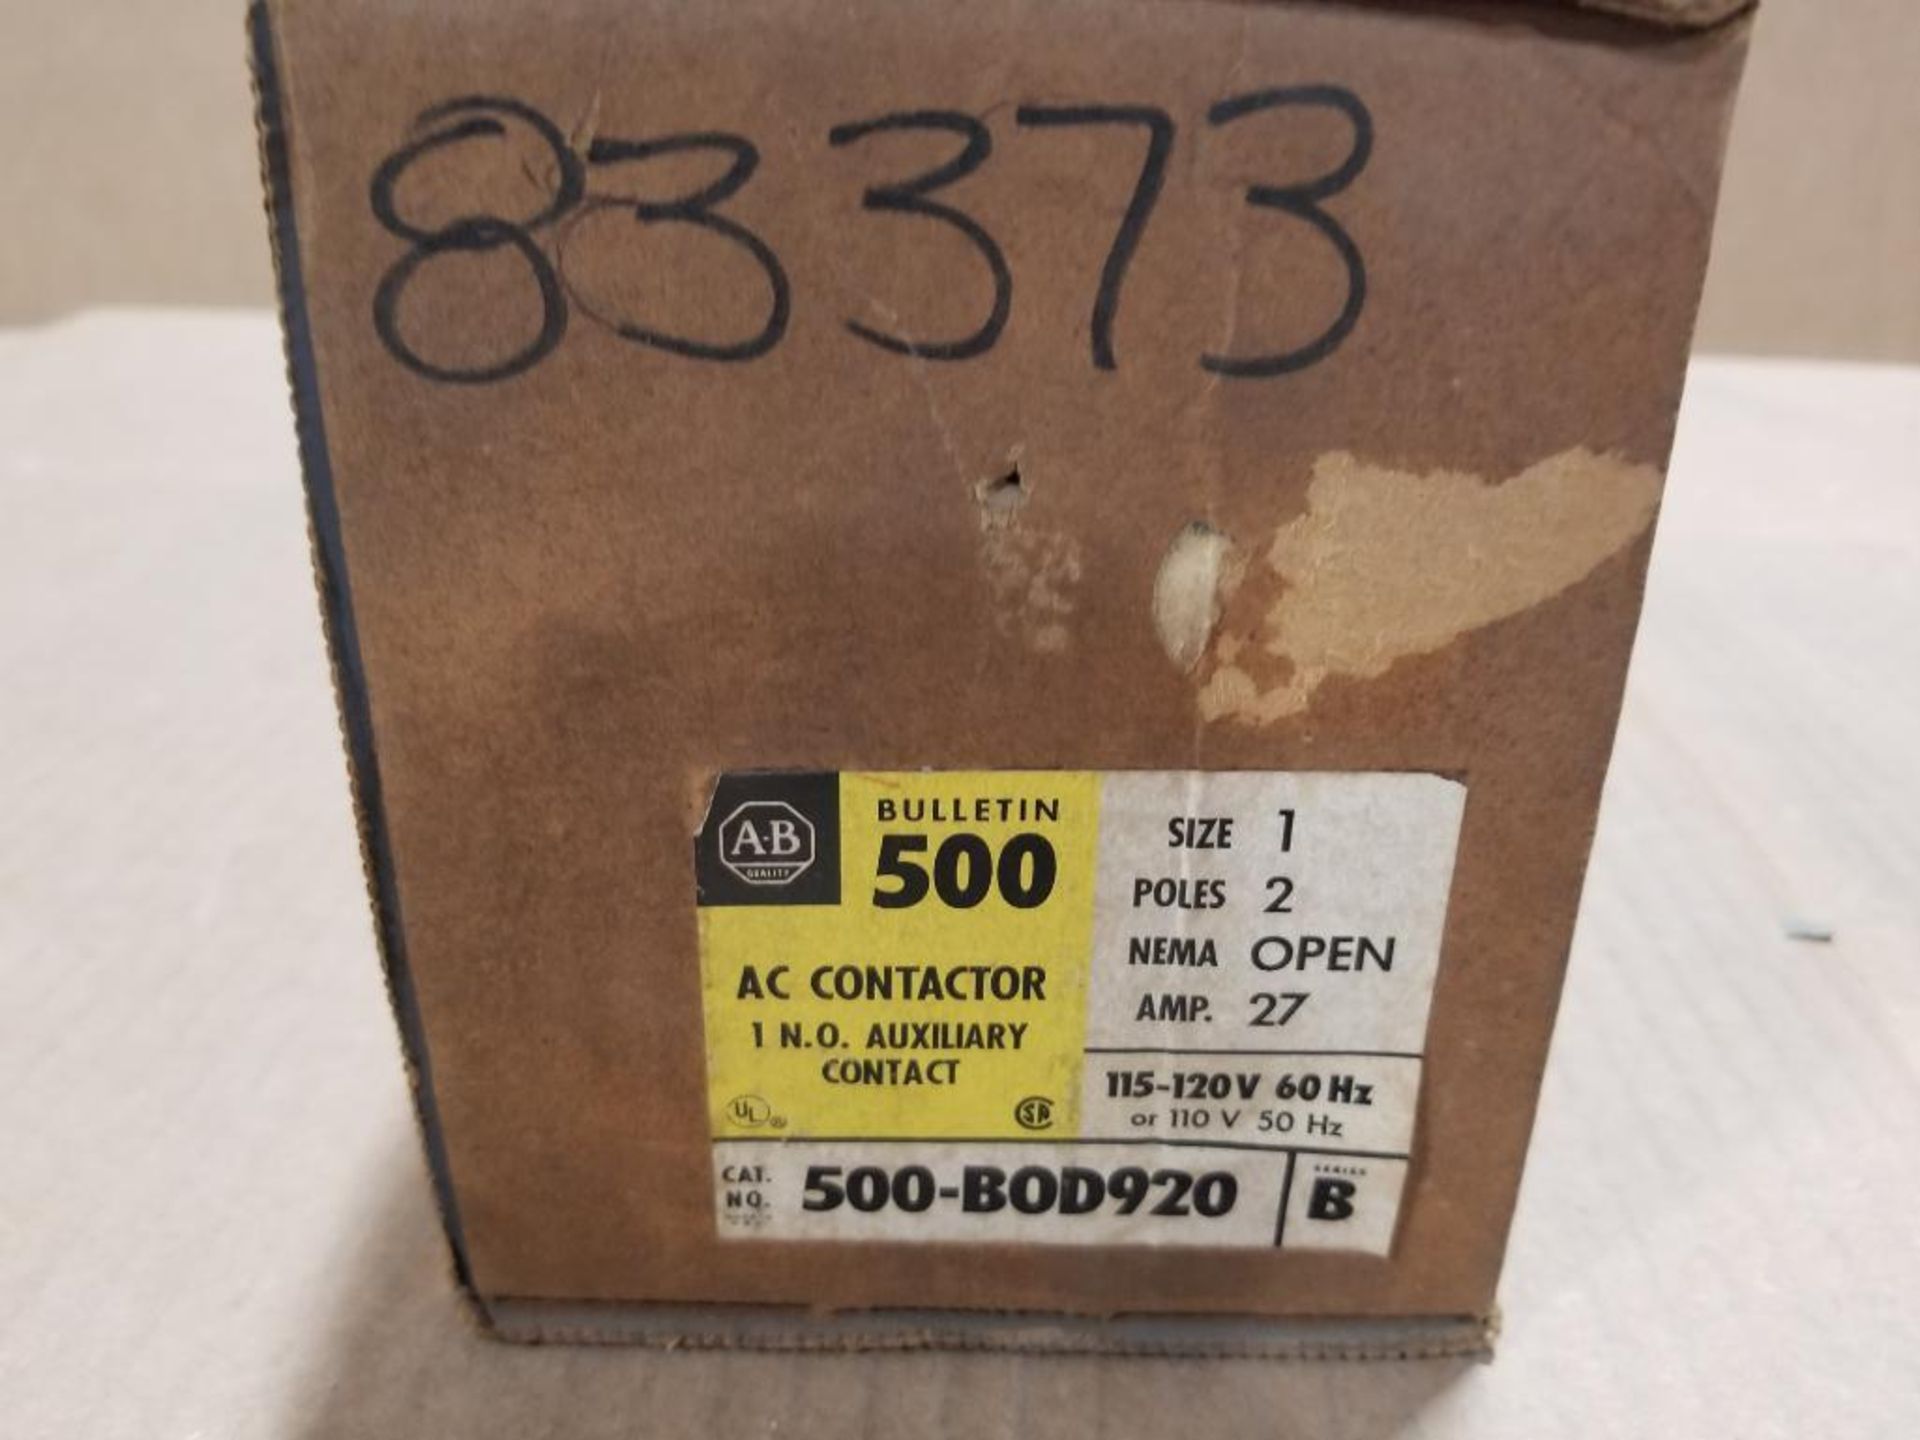 Allen Bradley AC contactor. Catalog number 500-B0D920.